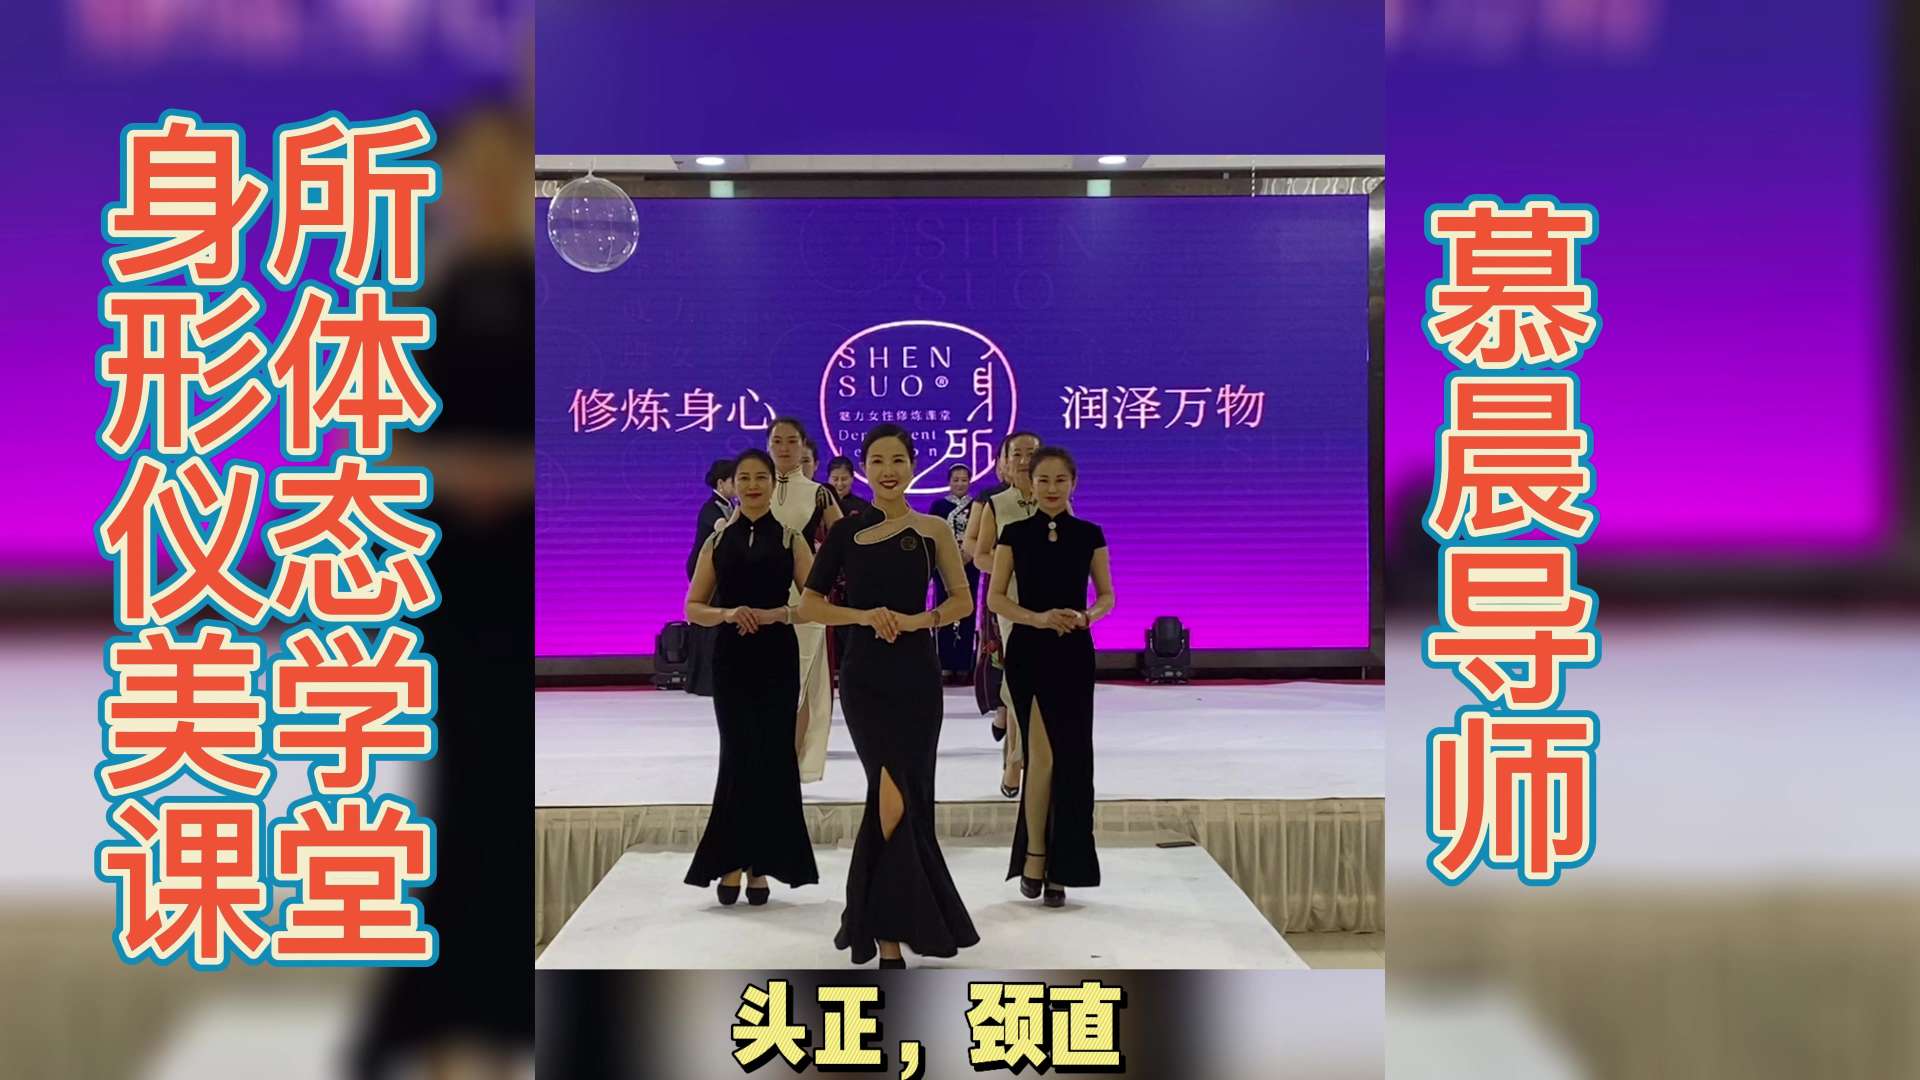 慕晨：舞蹈老师毛宇琳舞蹈视频，北京身所魅力女性修课堂丰台有吗？